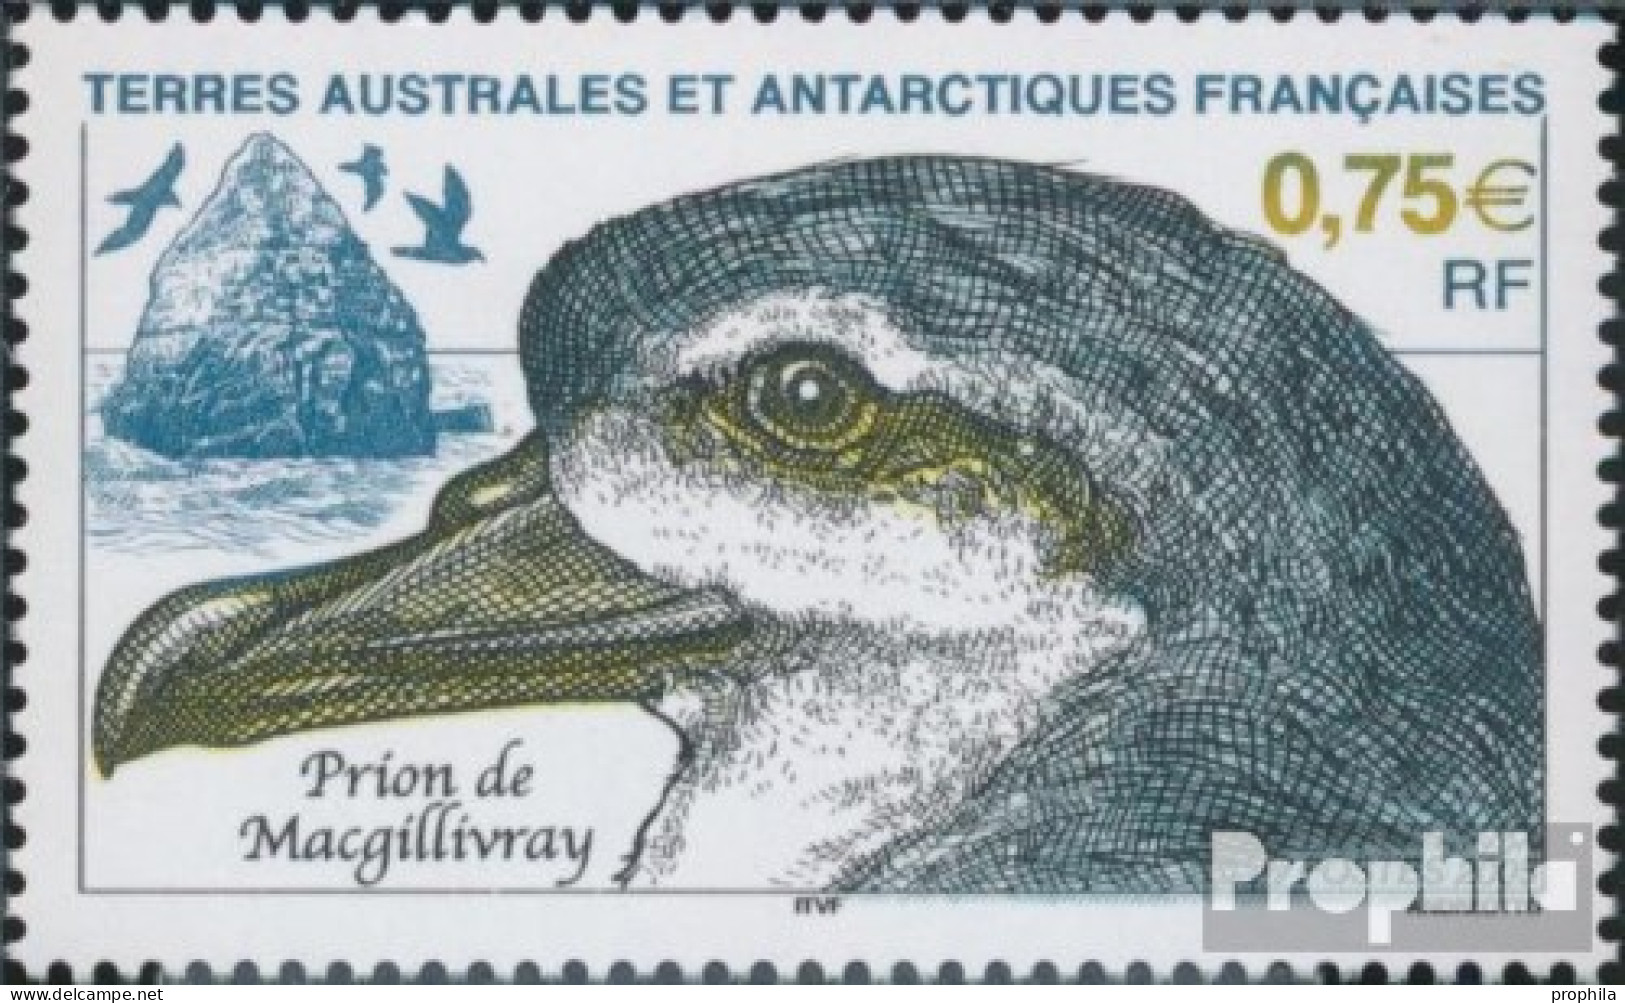 Französ. Gebiete Antarktis 561 (kompl.Ausg.) Postfrisch 2005 Tiere Der Antarktis - Ungebraucht